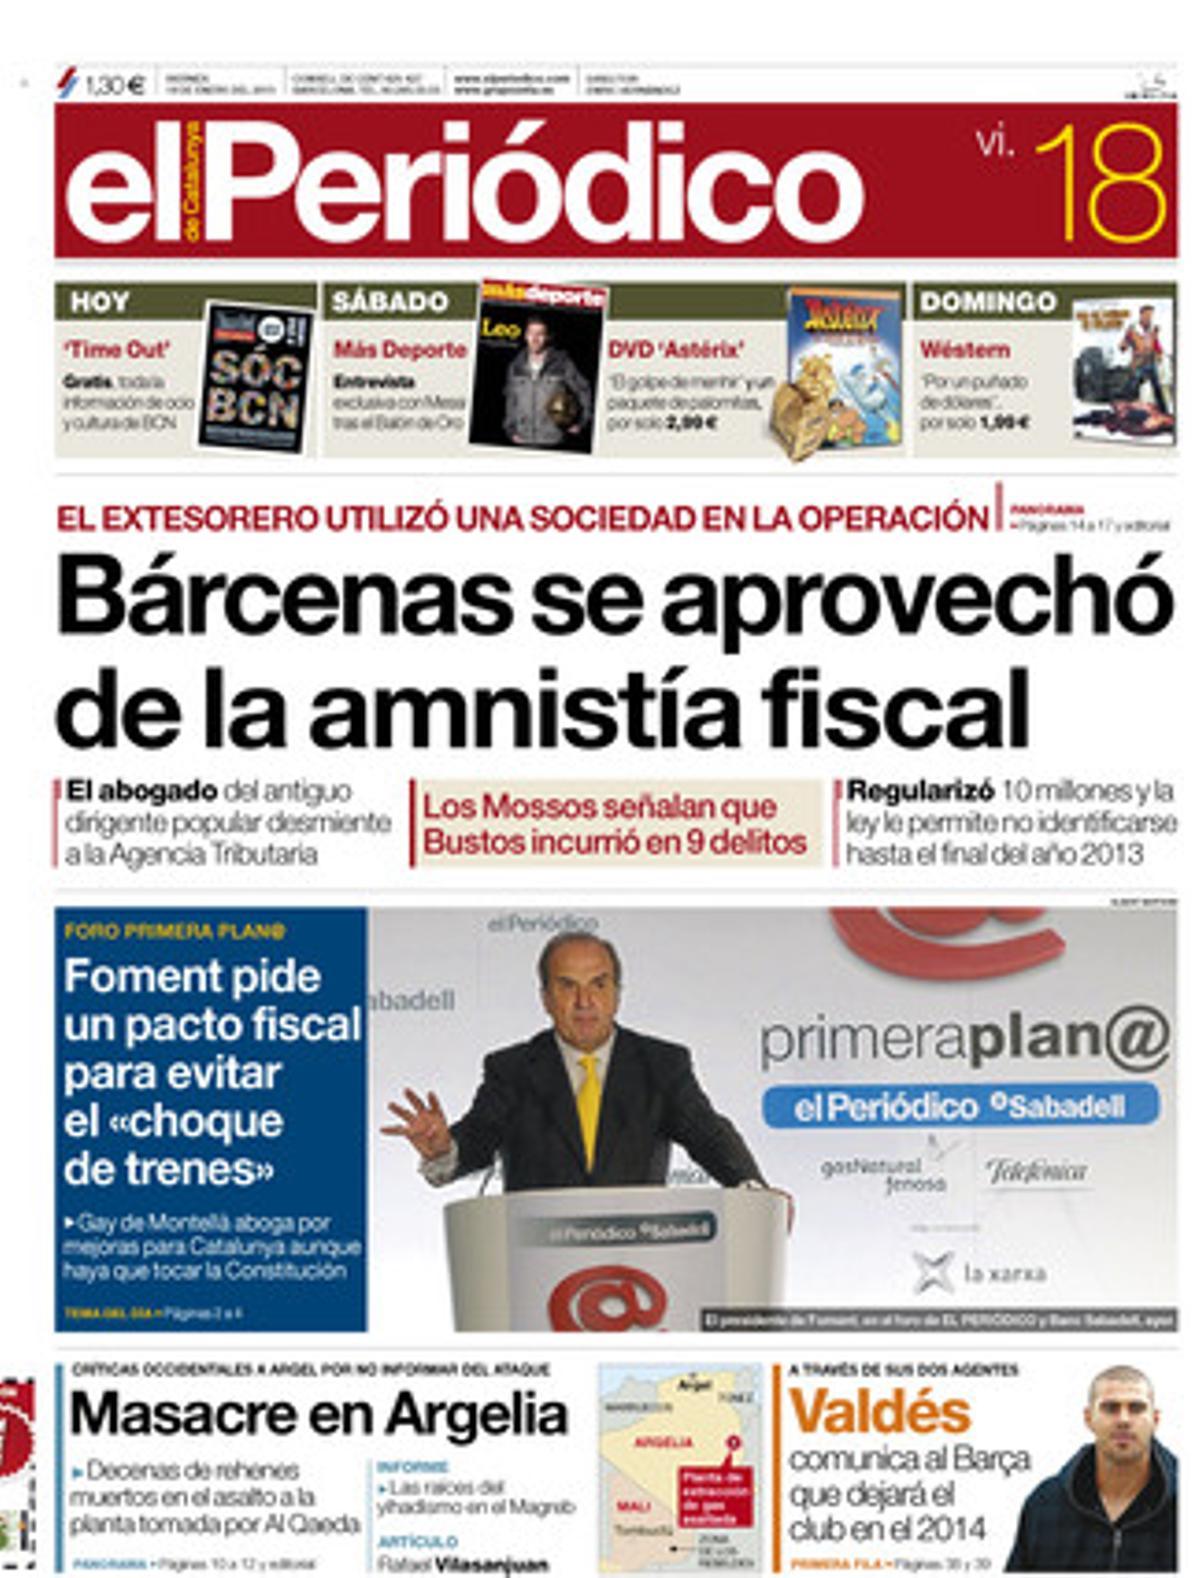 Bárcenas es va aprofitar de l’amnistia fiscal. Portada publicada el 18 de gener del 2013.